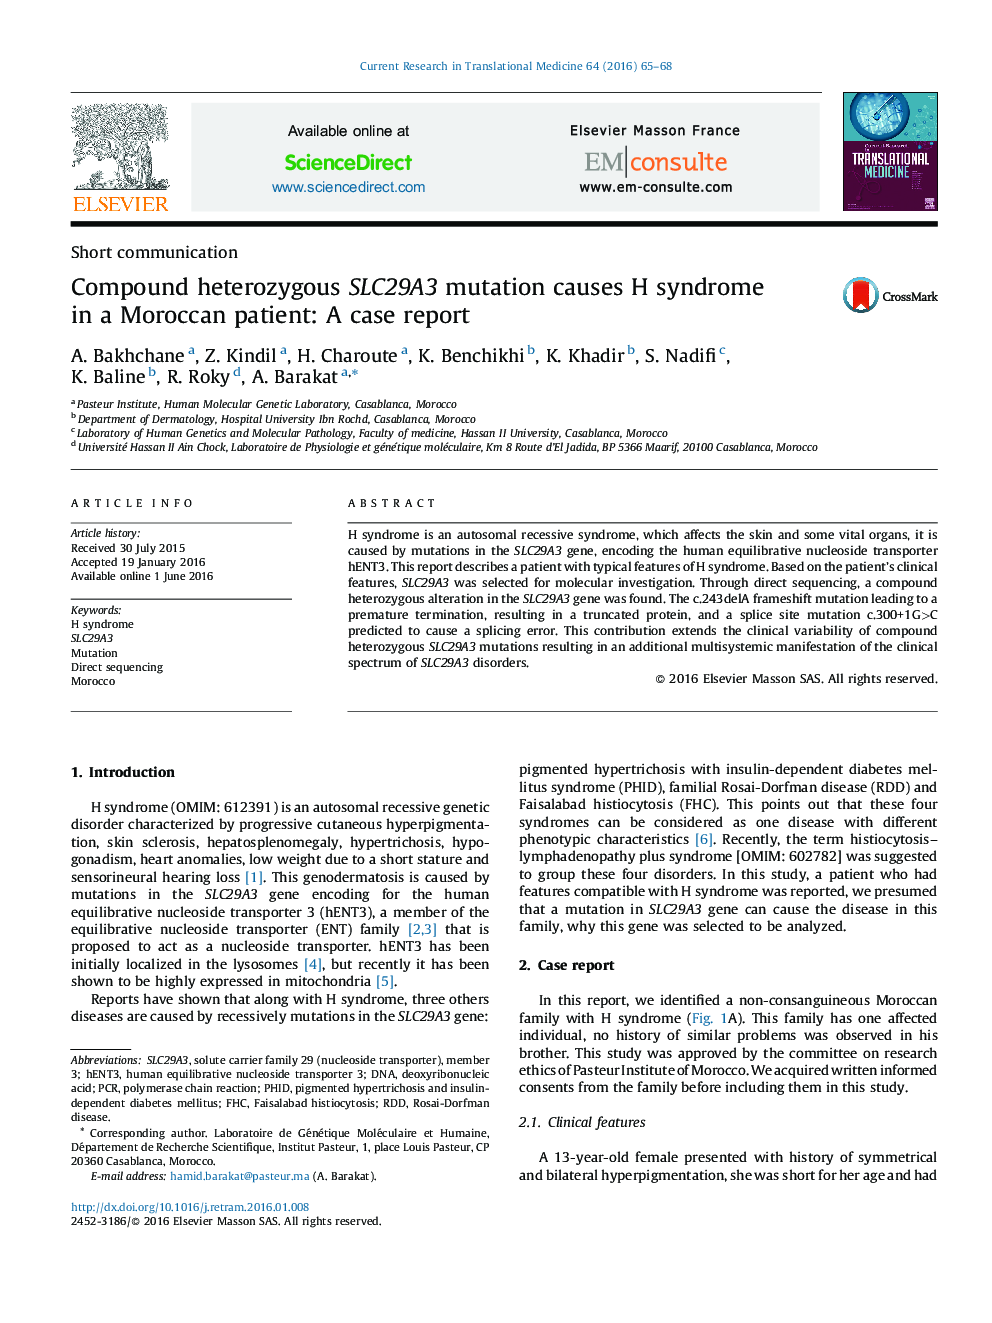 جهش هتروزیگوت SLC29A3 ترکیبی باعث ایجاد سندروم H در یک بیمار مراکشی می شود: گزارش موردی